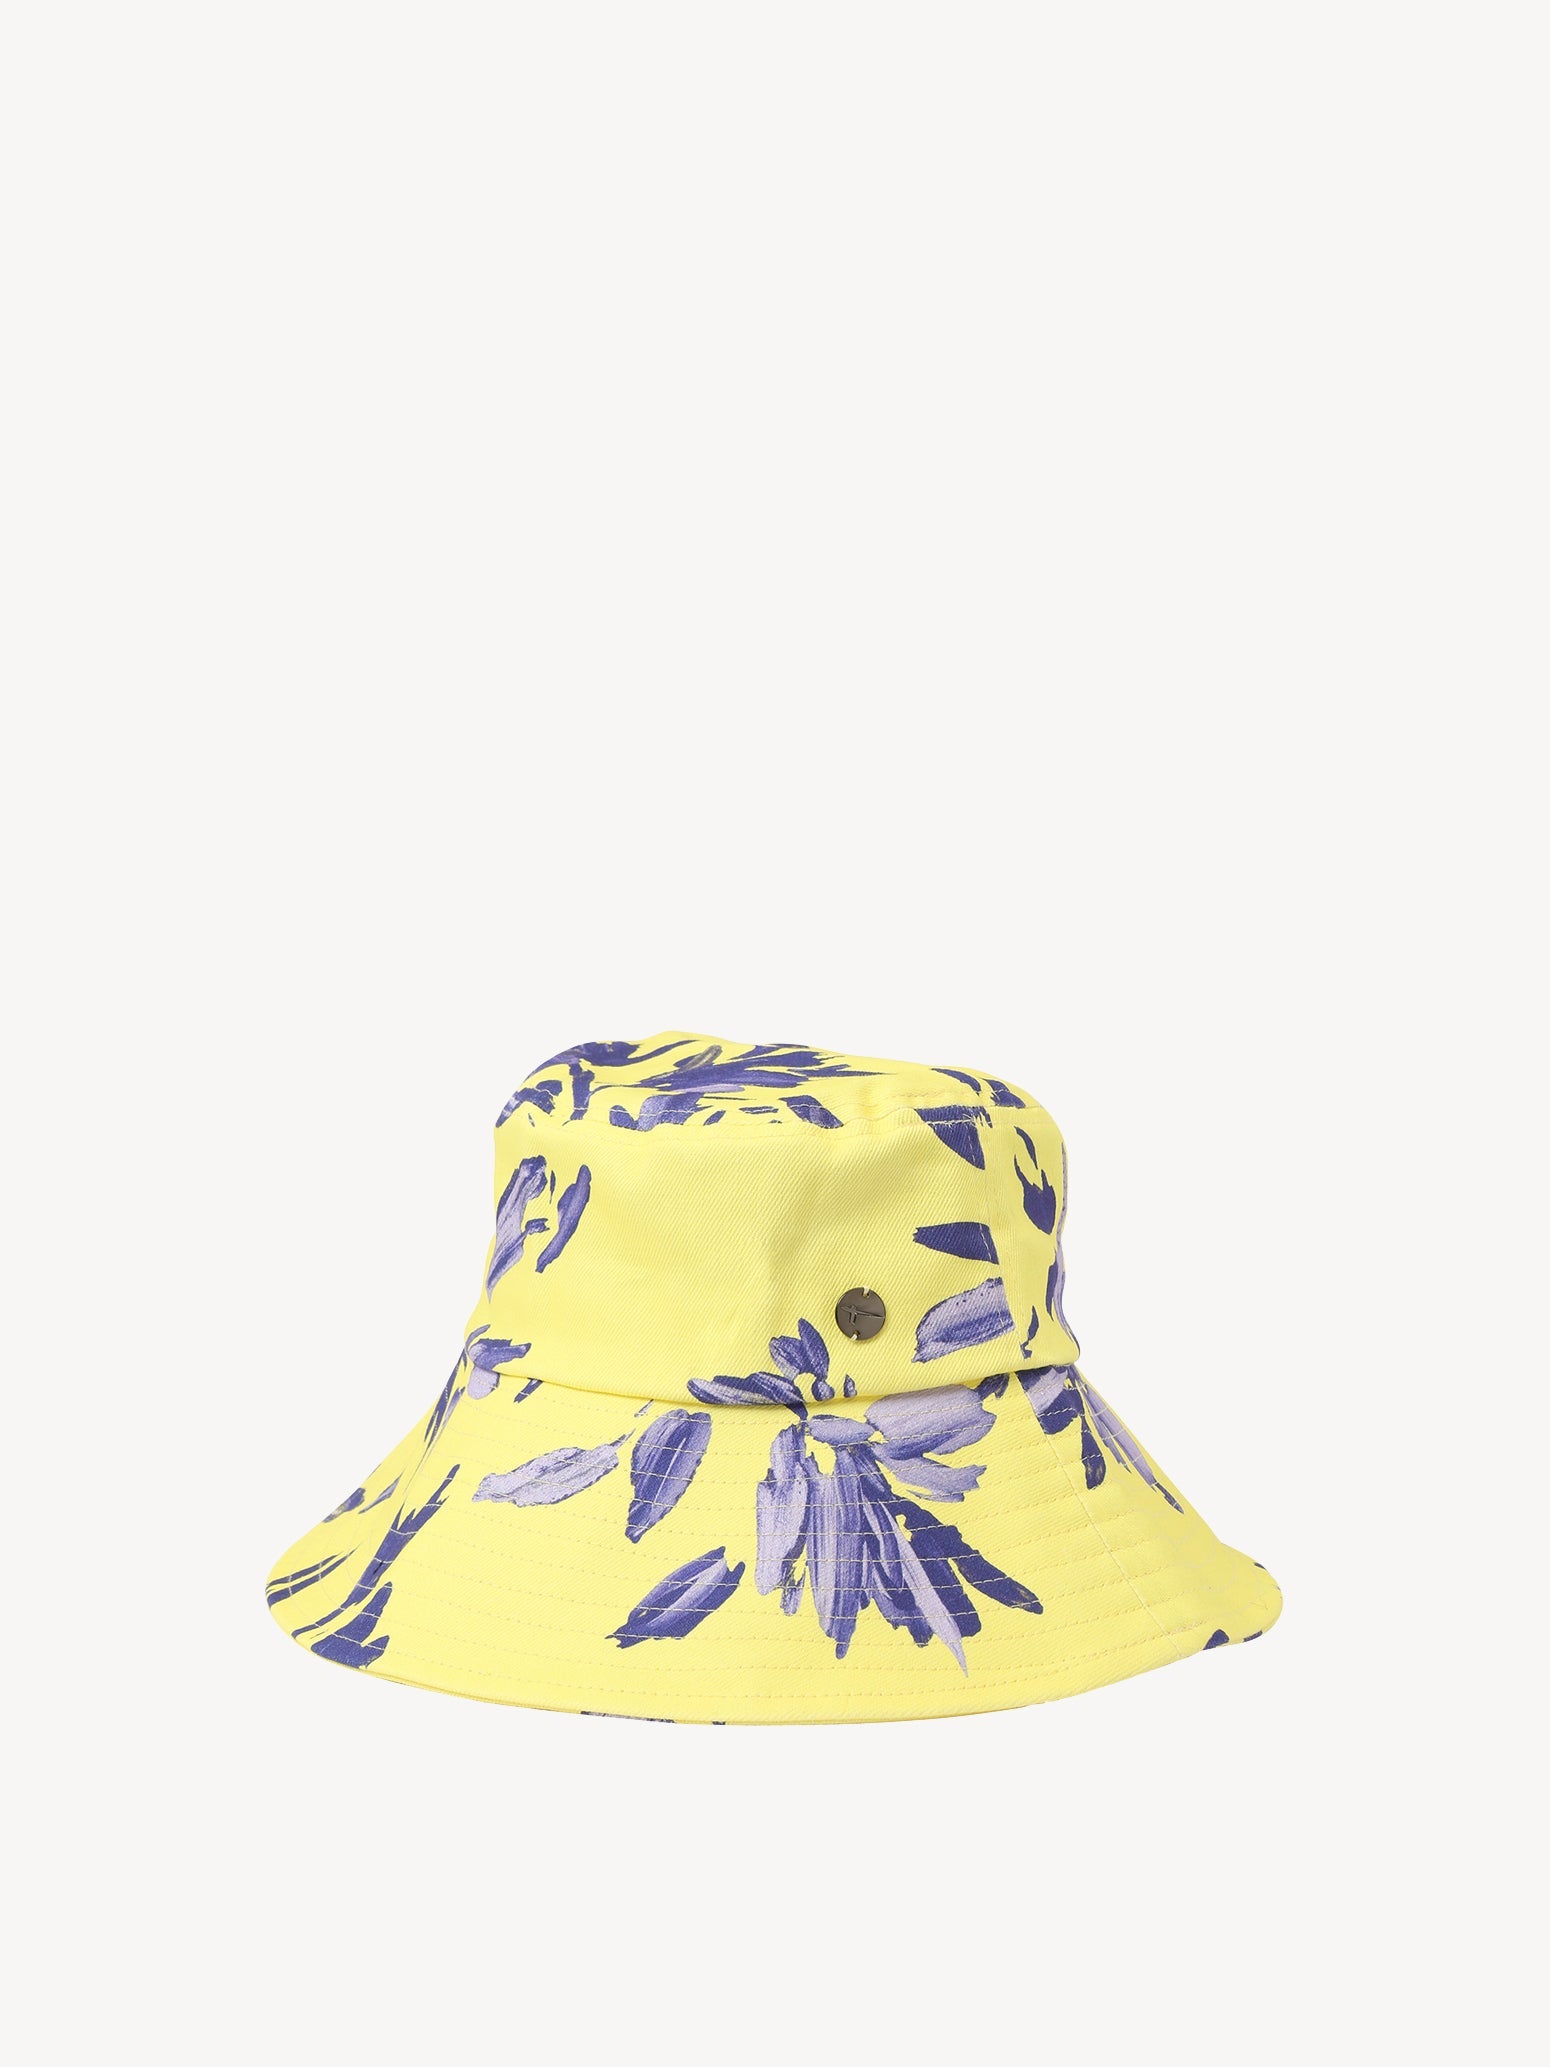 Apolda Aop Bucket Hat in Limelight Flower AOP Caps Tamaris   